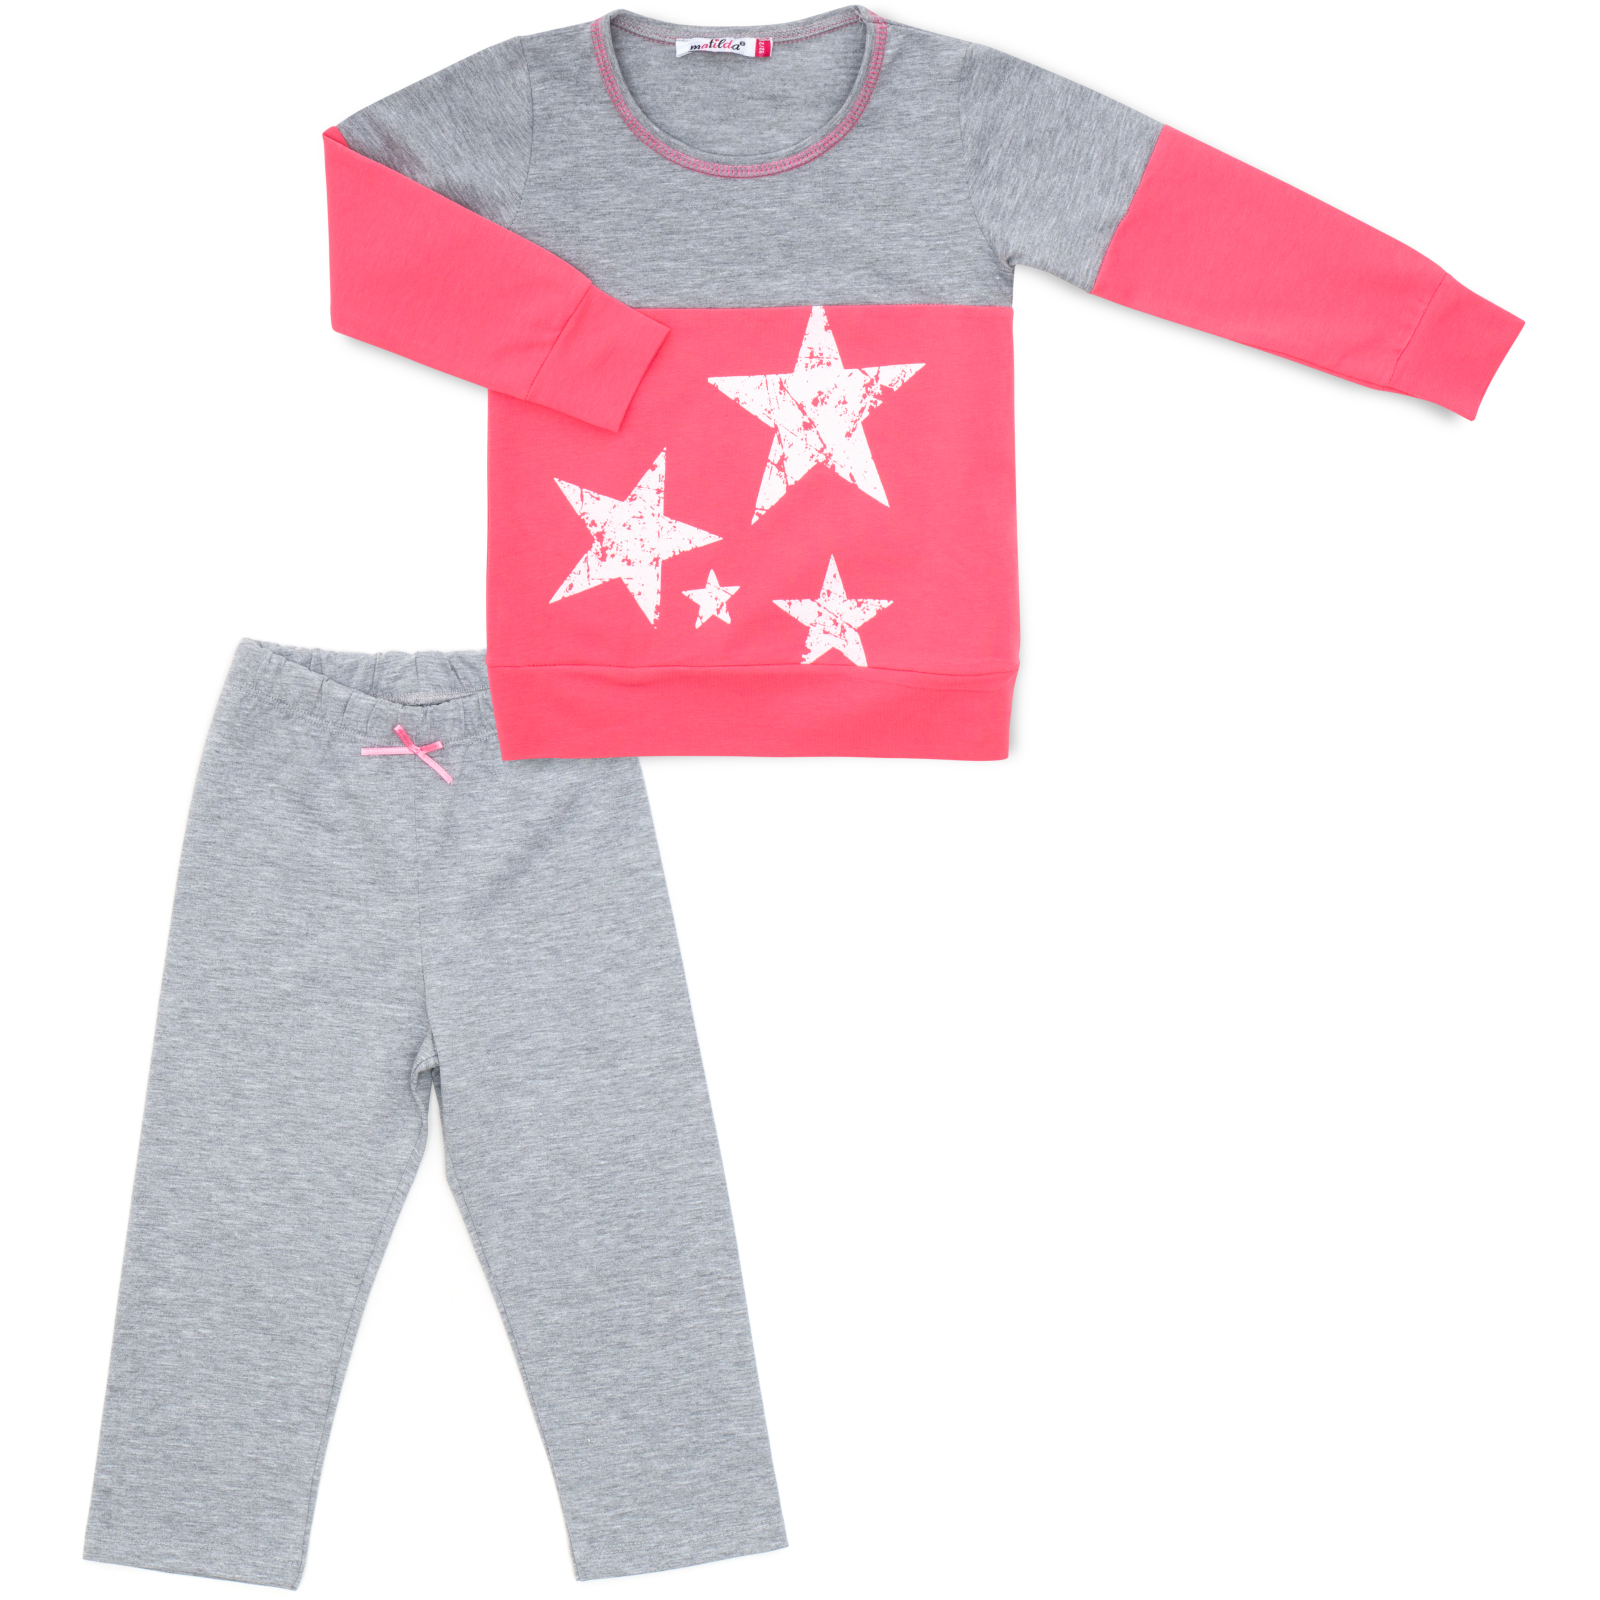 Пижама Matilda со звездочками (7167-134G-pink)